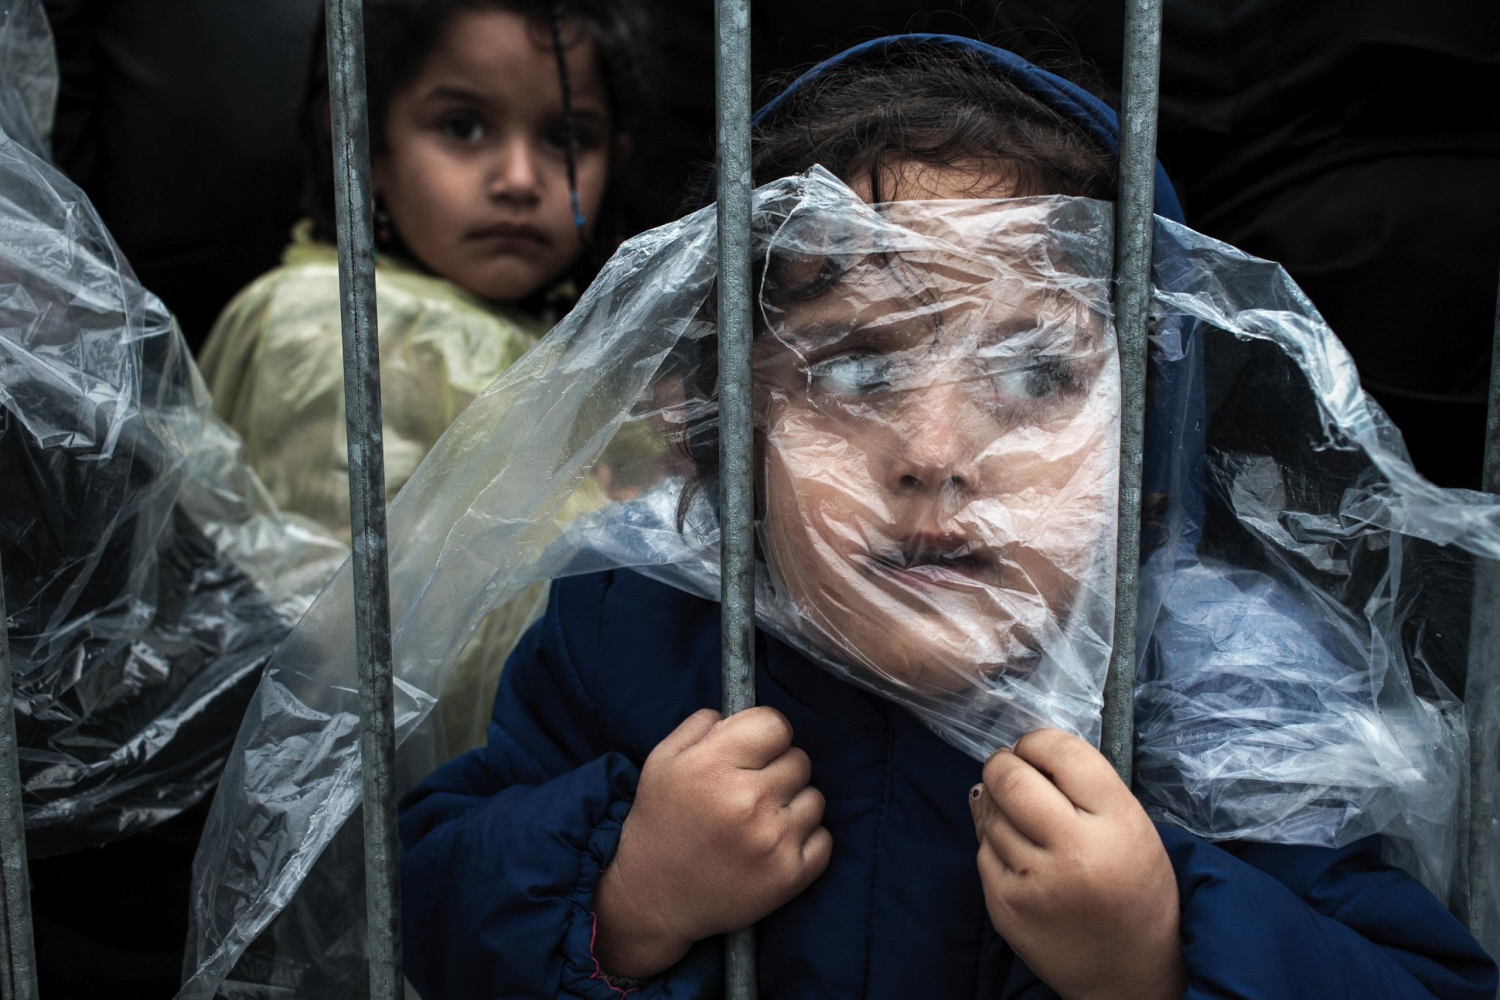 La espera de una menor refugiada, primer premio ‘Gente’ del World Press Photo